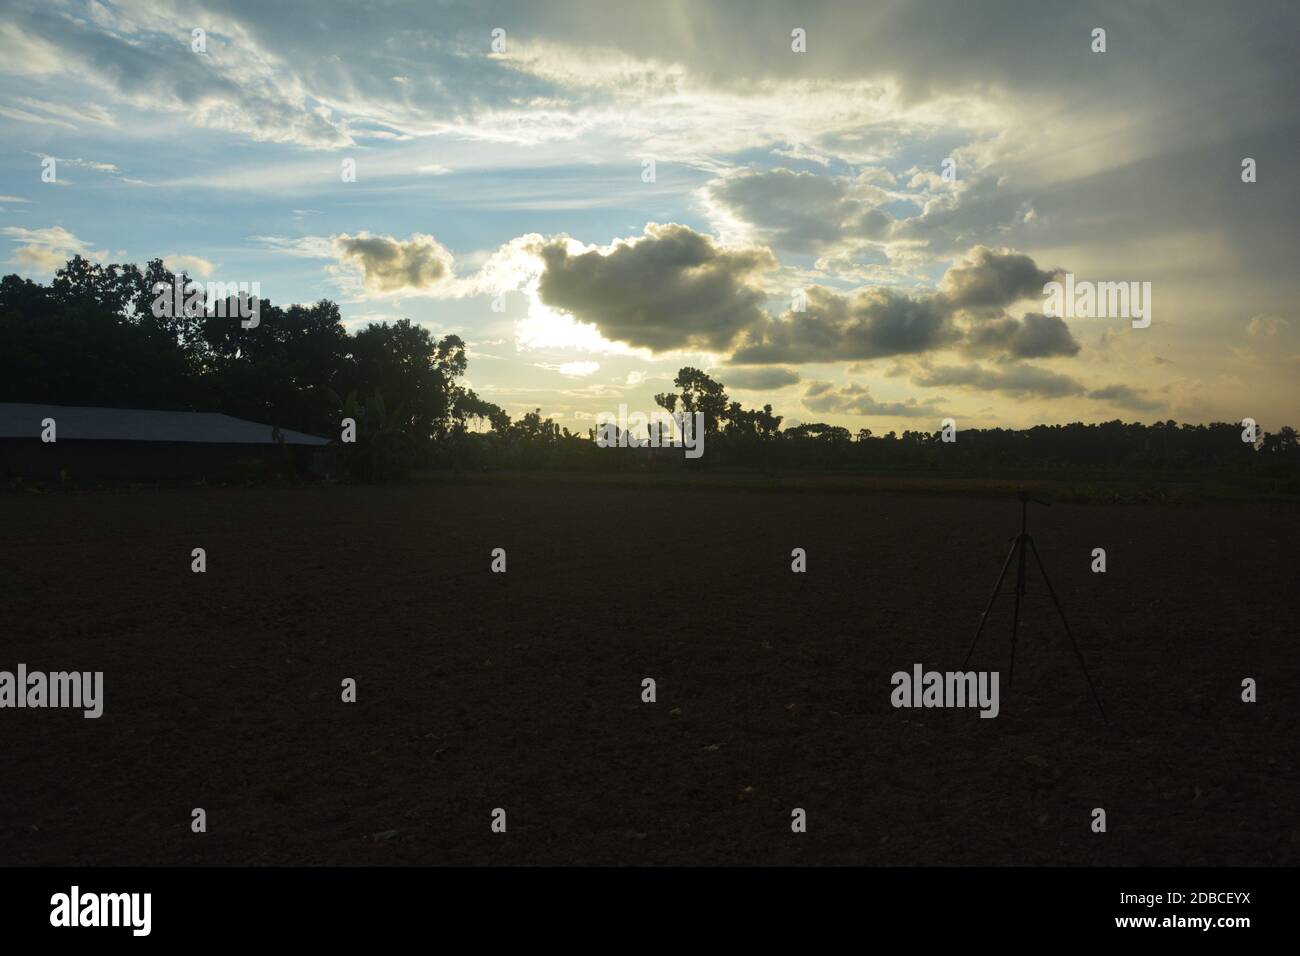 La scena di un campo villaggio con cielo blu e. sole dietro le nuvole Foto Stock